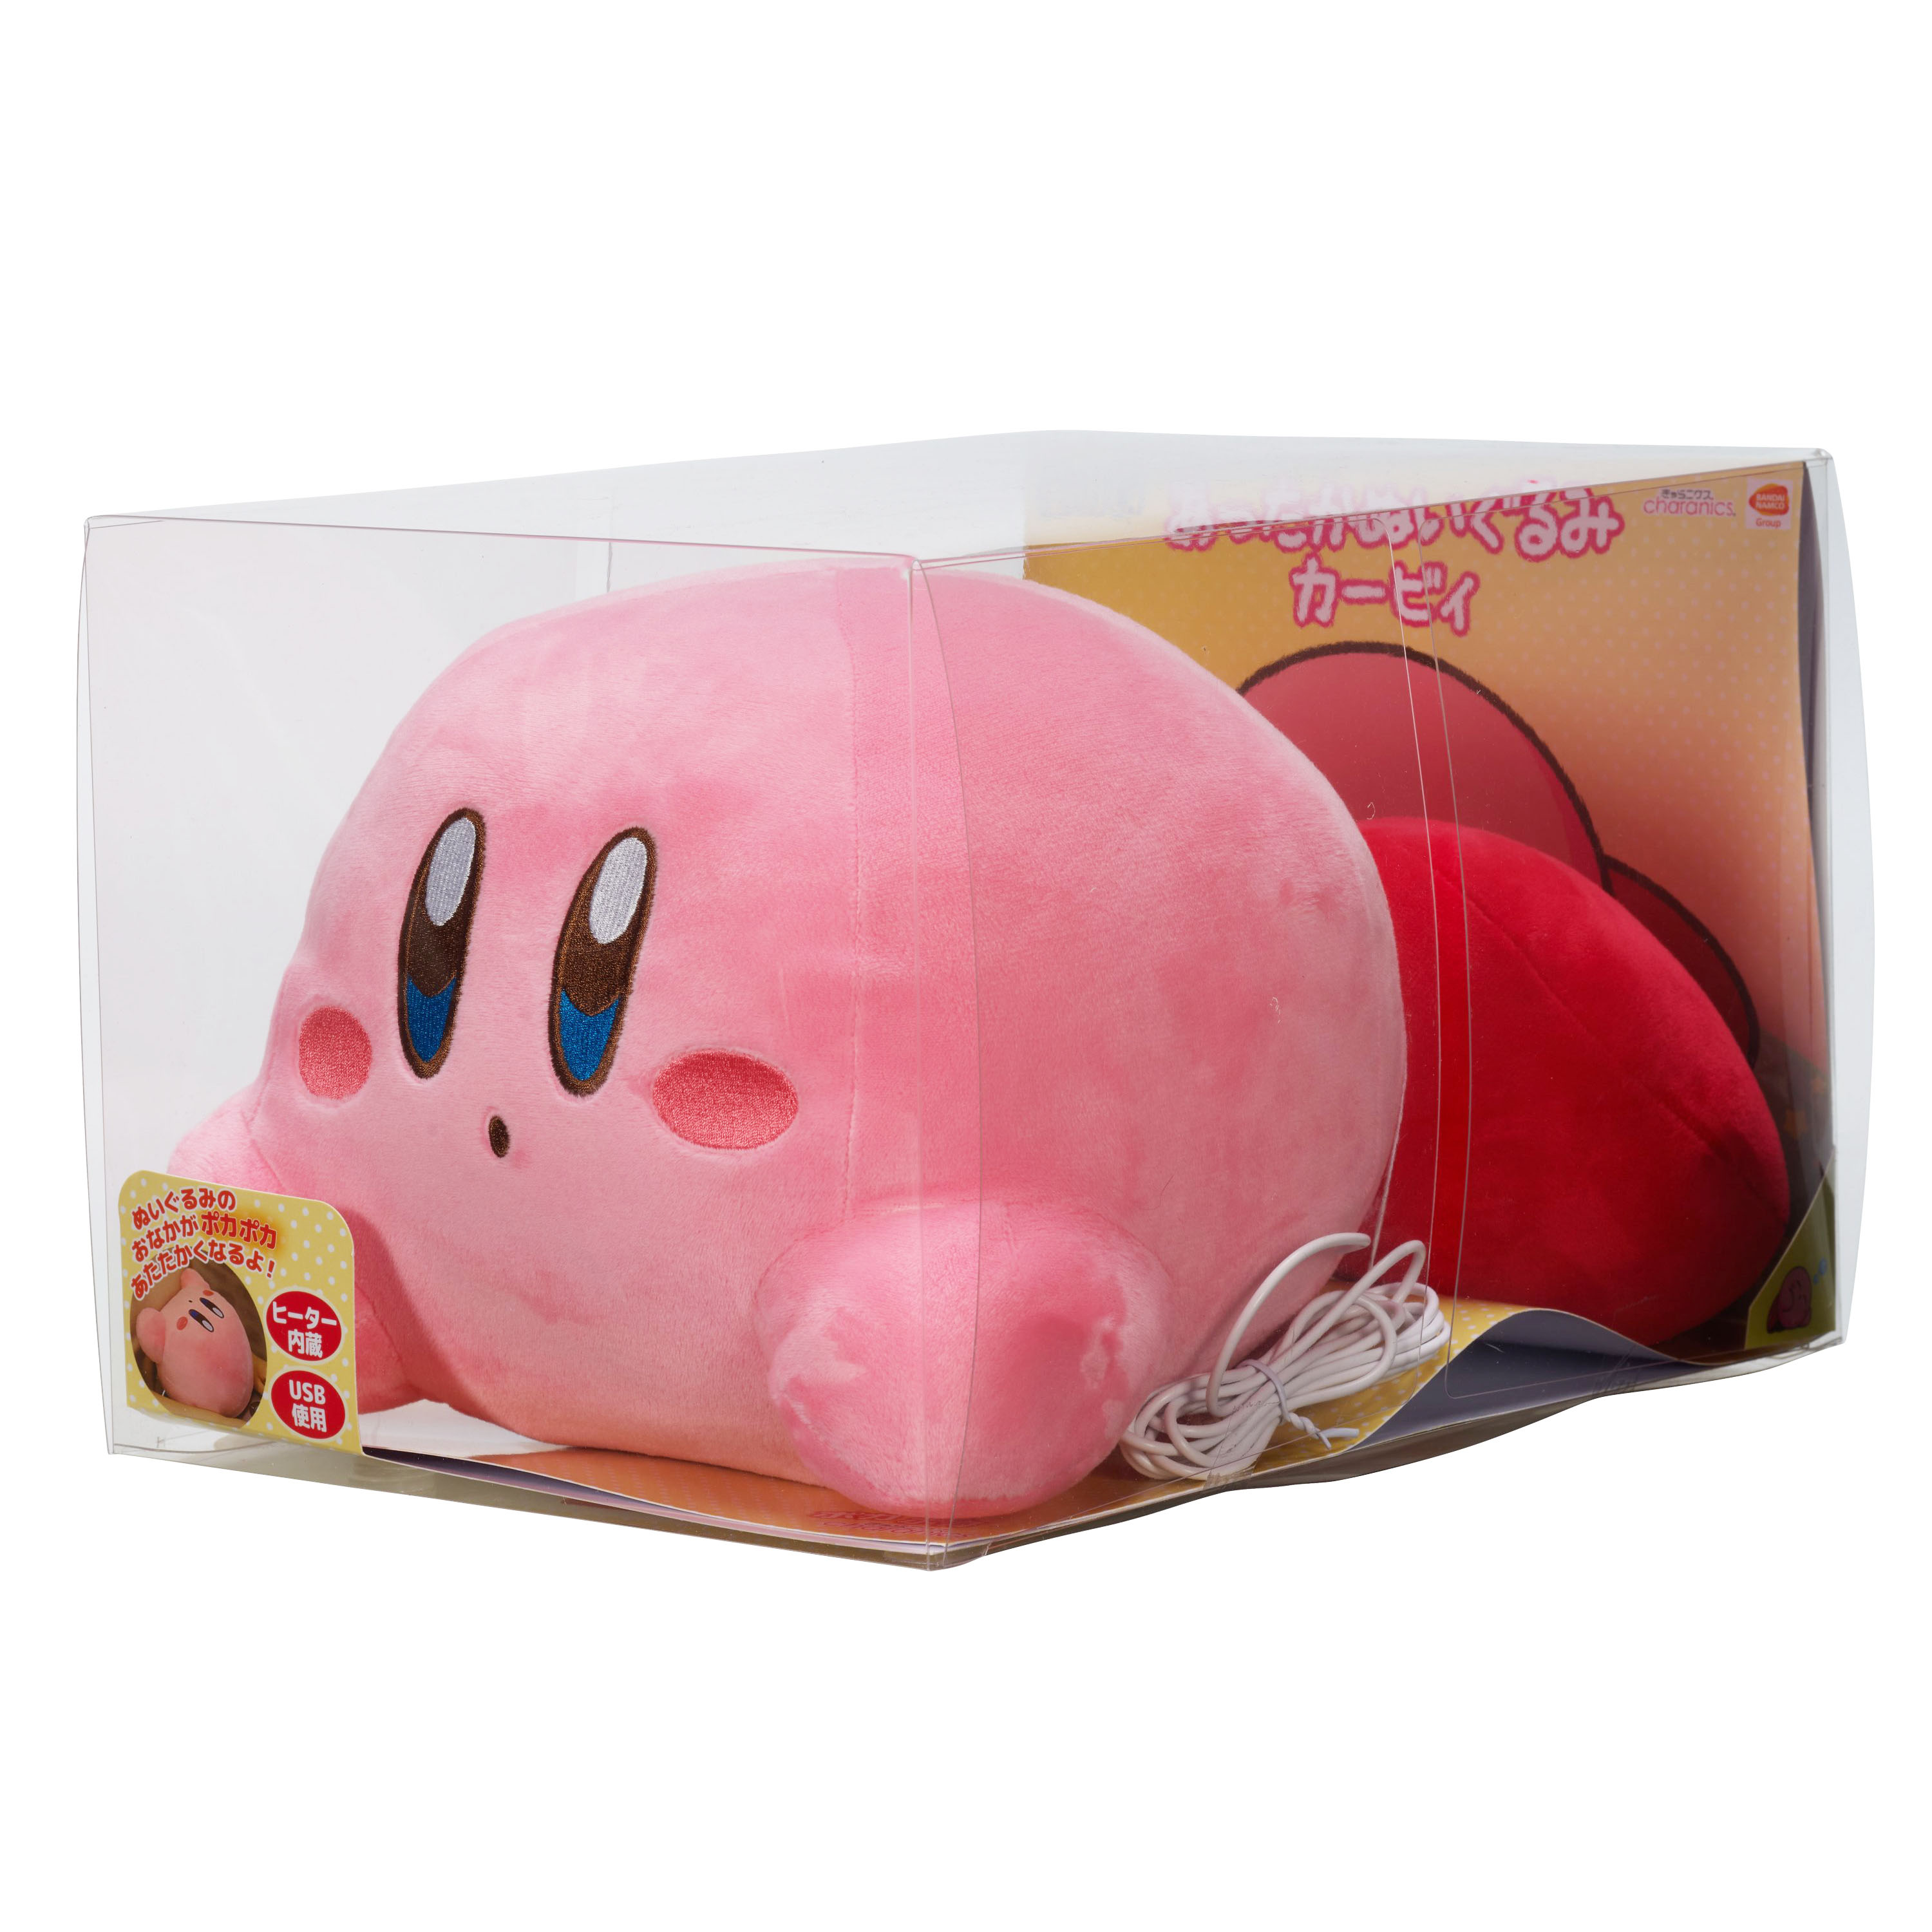 Kirby Warm Stainless Steel Bottle / Kirby